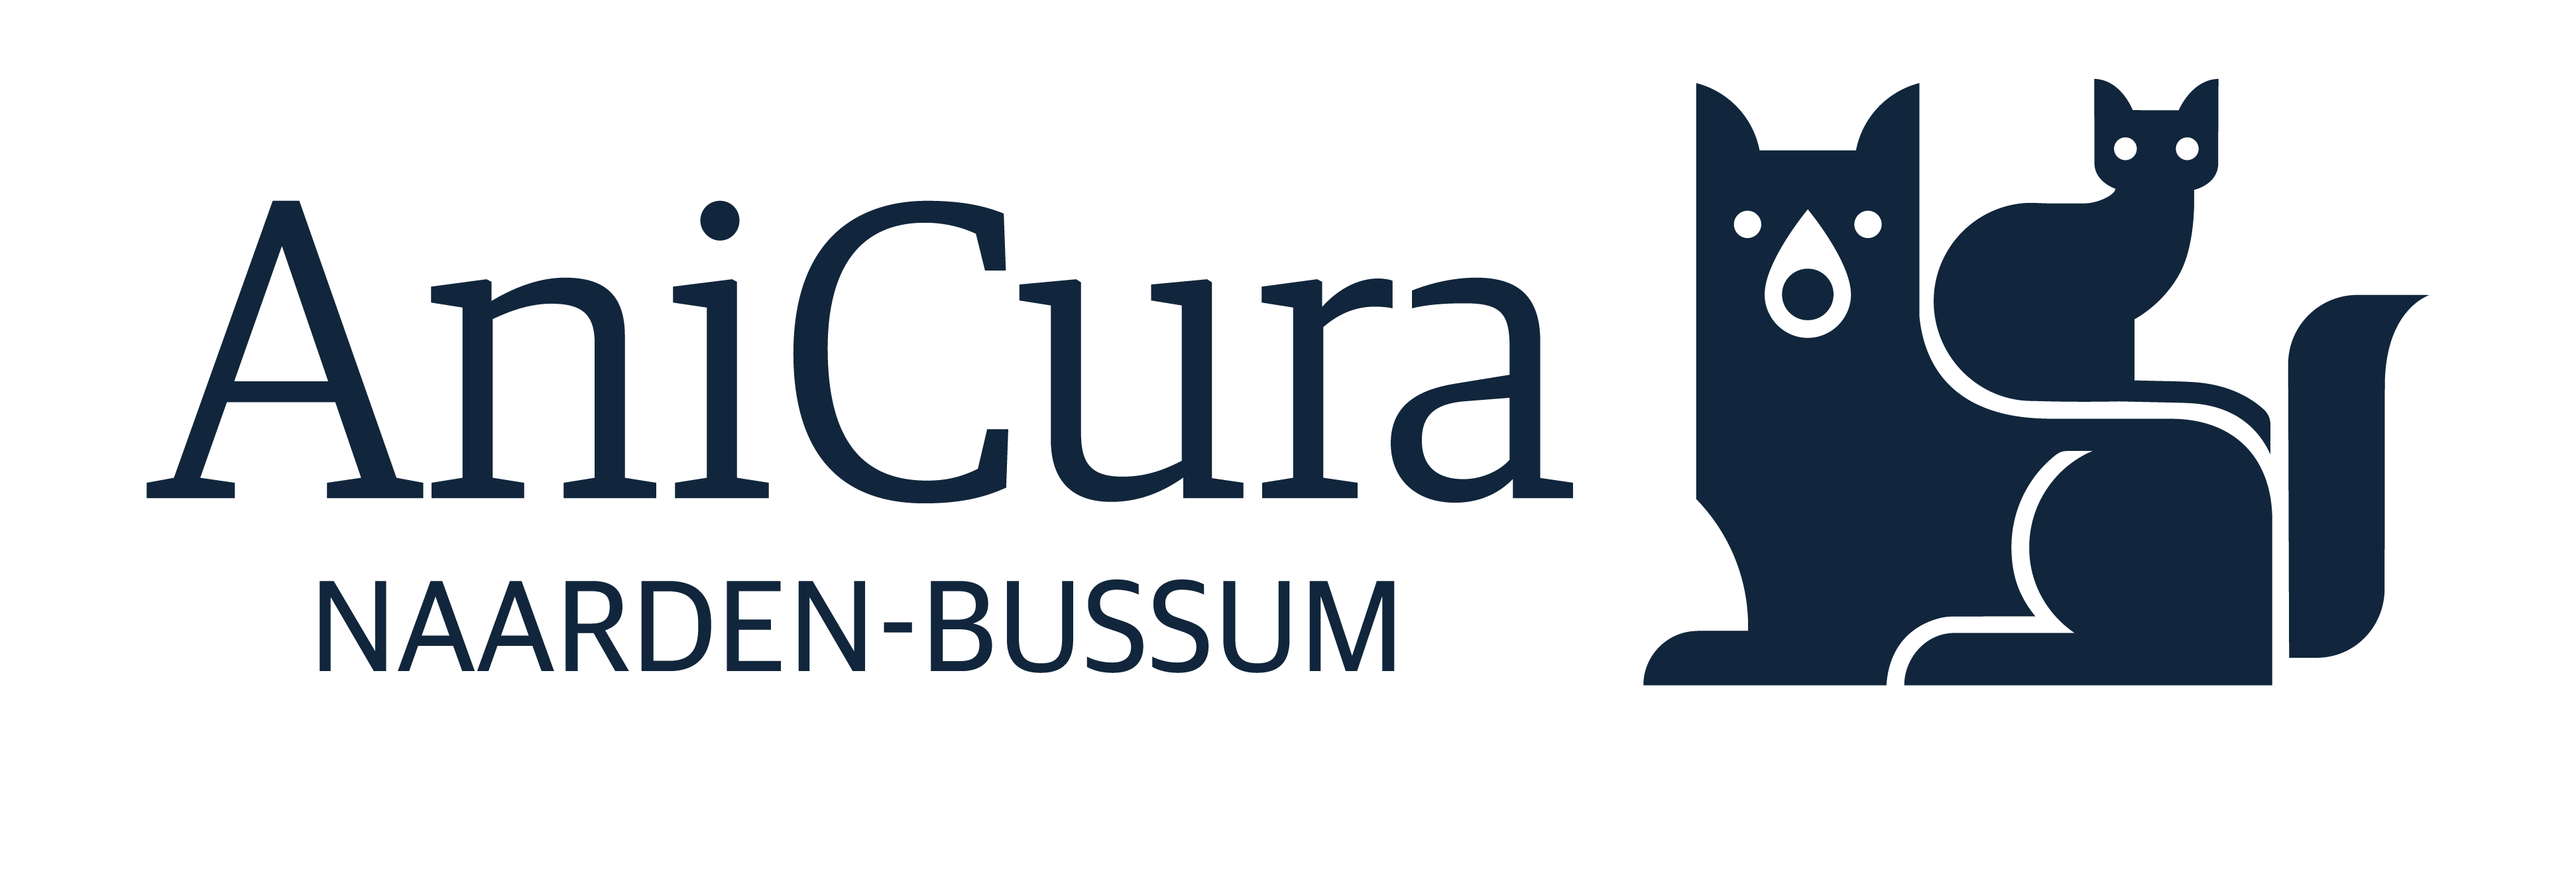 AniCura Naarden-Bussum logo